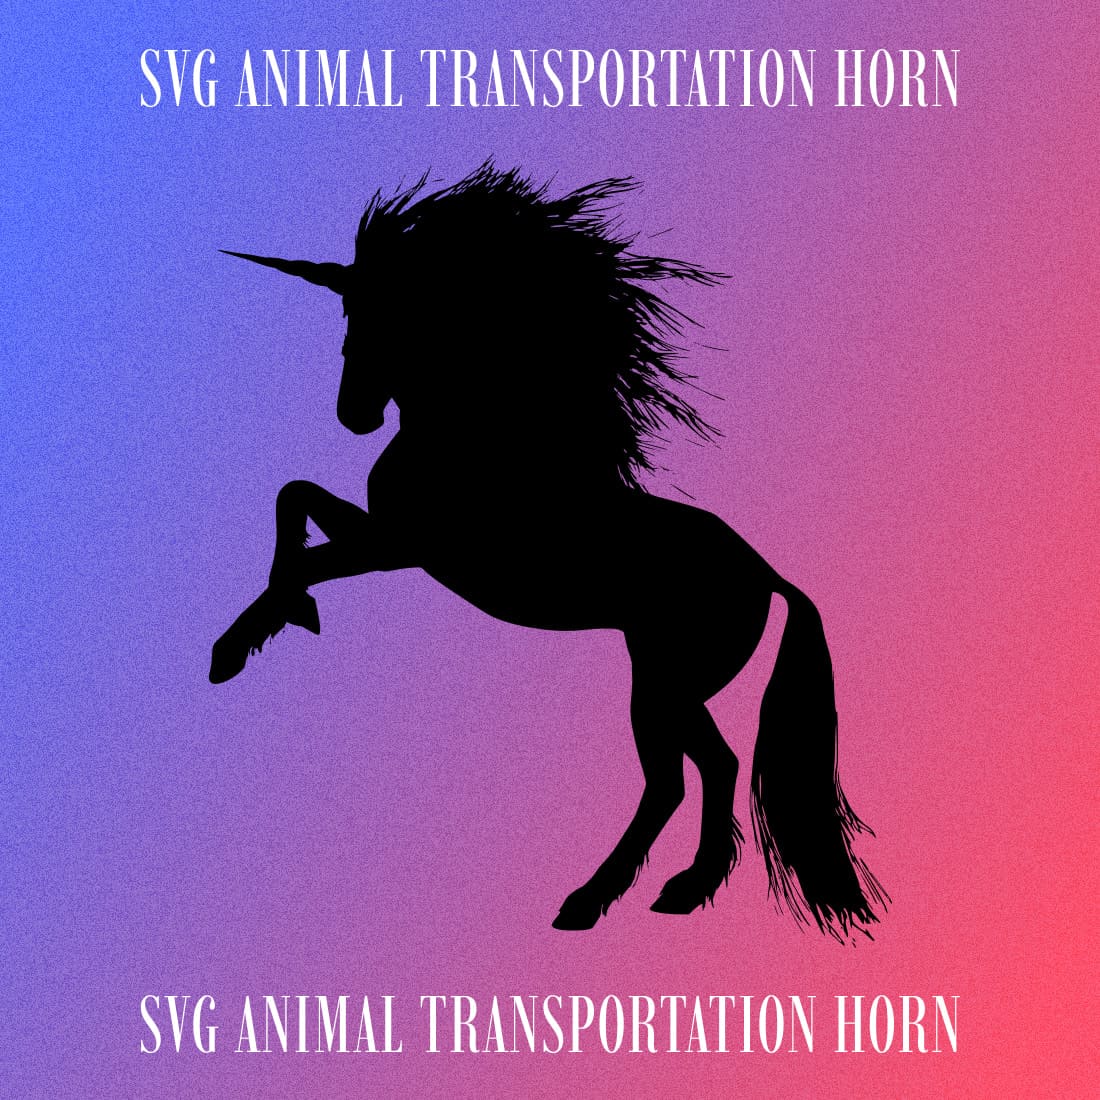 SVG Animal Transportation Horn - Colorful Image.